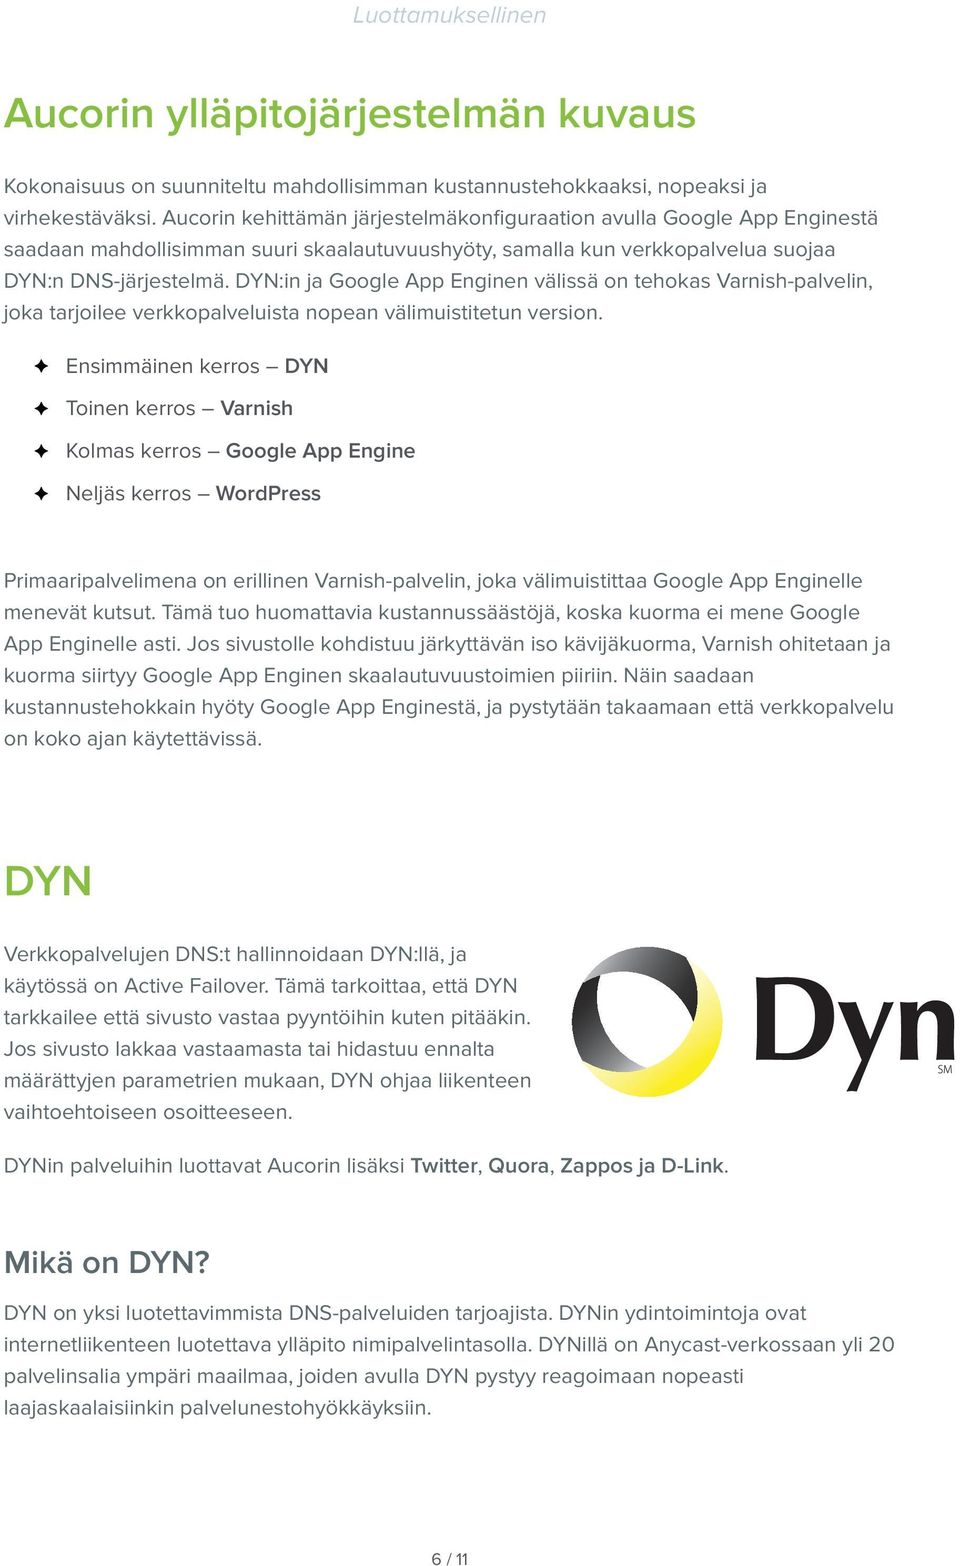 DYN:in ja Google App Enginen välissä on tehokas Varnish-palvelin, joka tarjoilee verkkopalveluista nopean välimuistitetun version.